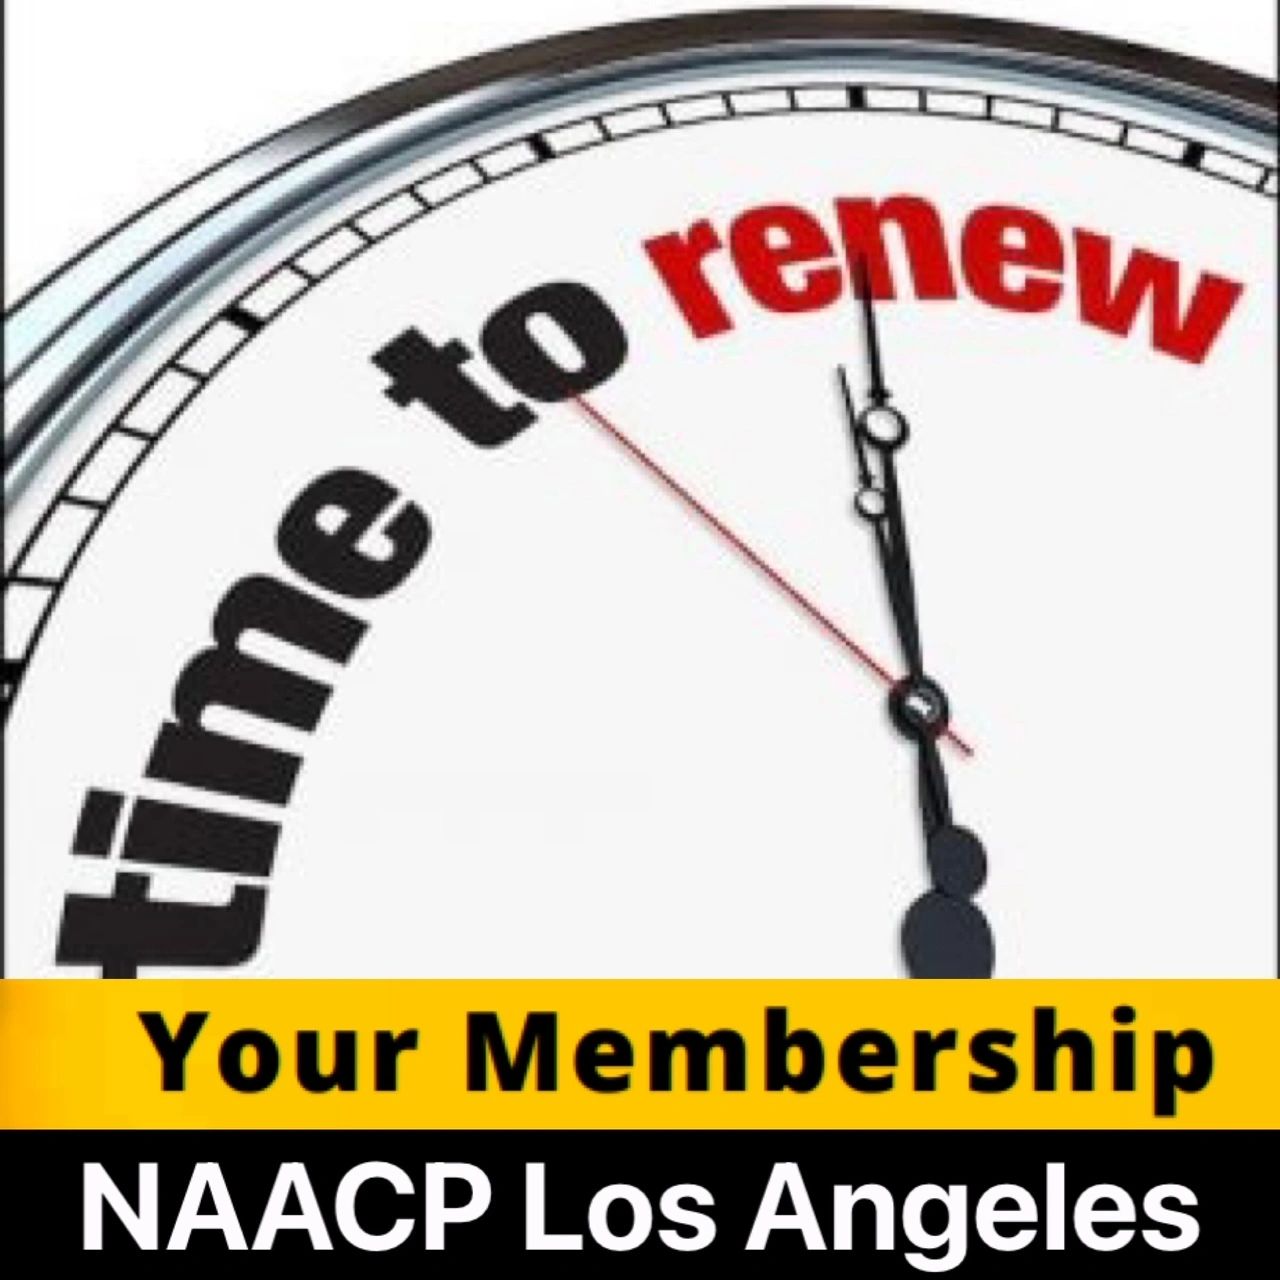 Join AAA, Login & Renew Membership